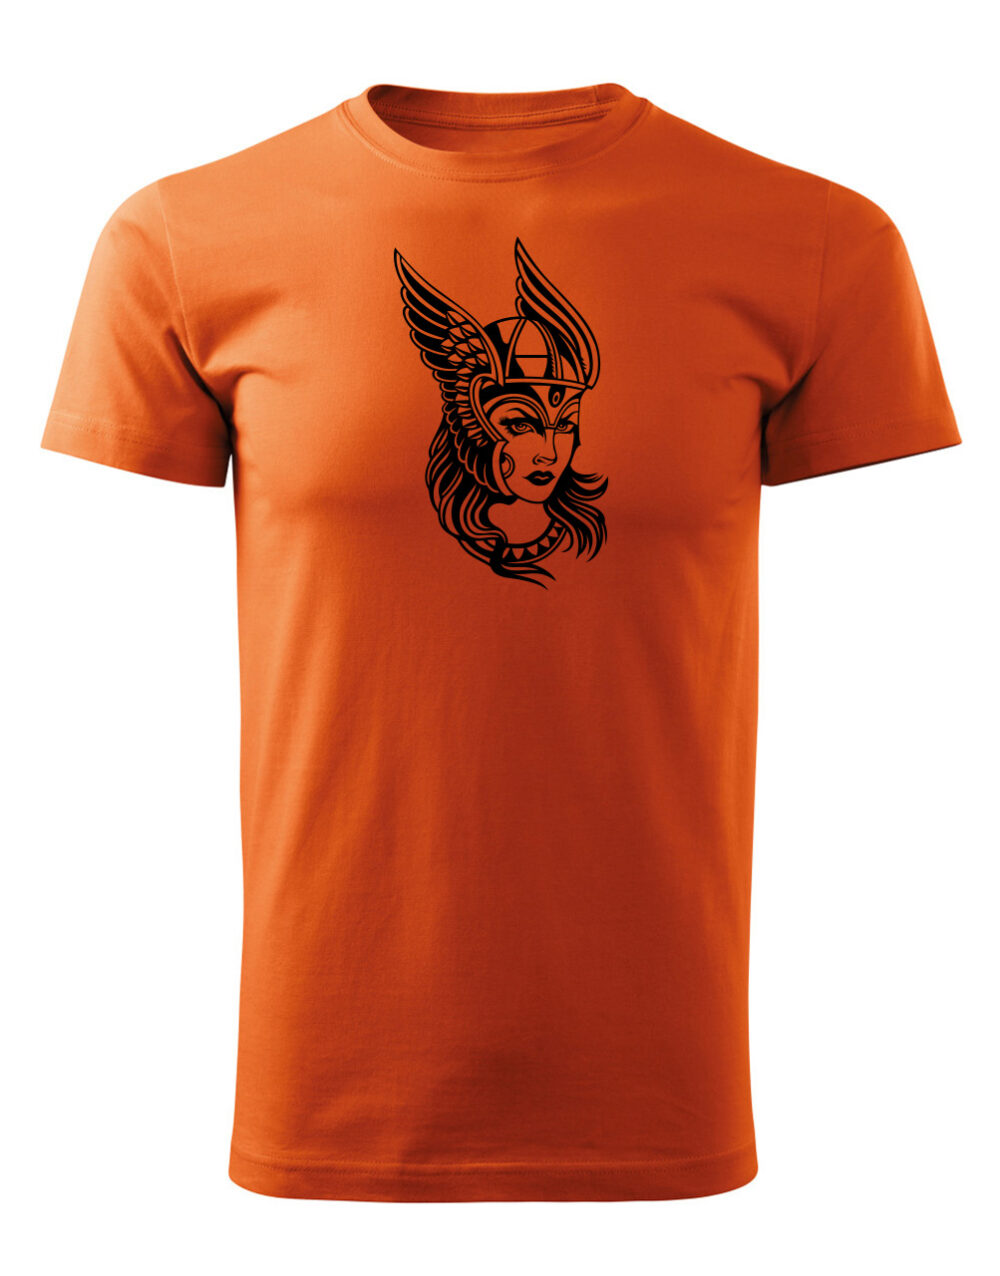 Pánské tričko s potiskem Valkýra oranžová